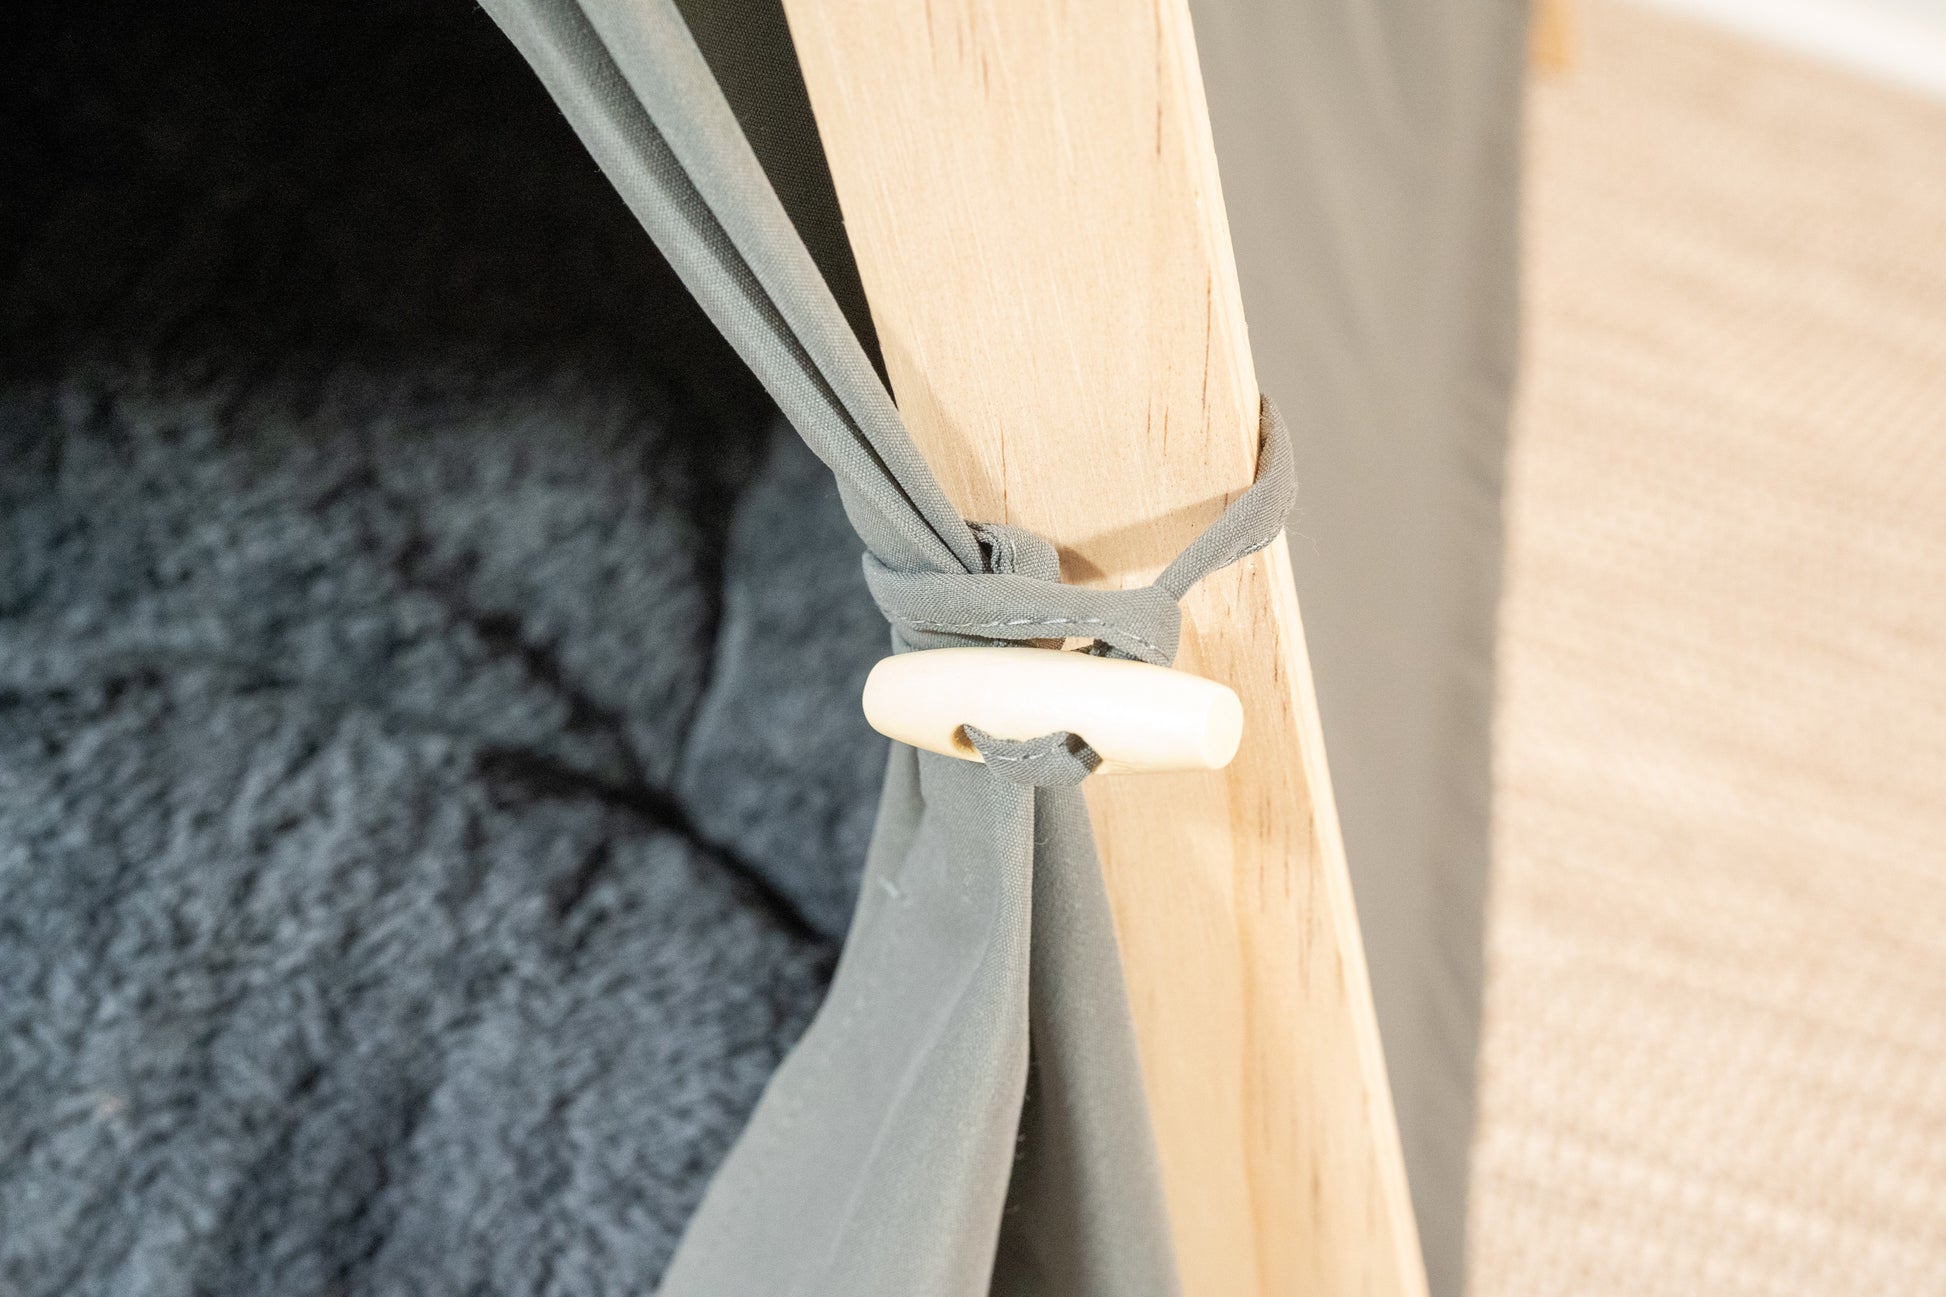 Close-up view of gray pet tent curtain clip. | Vue rapprochée de l'attache des rideaux de la tente grise pour animaux.